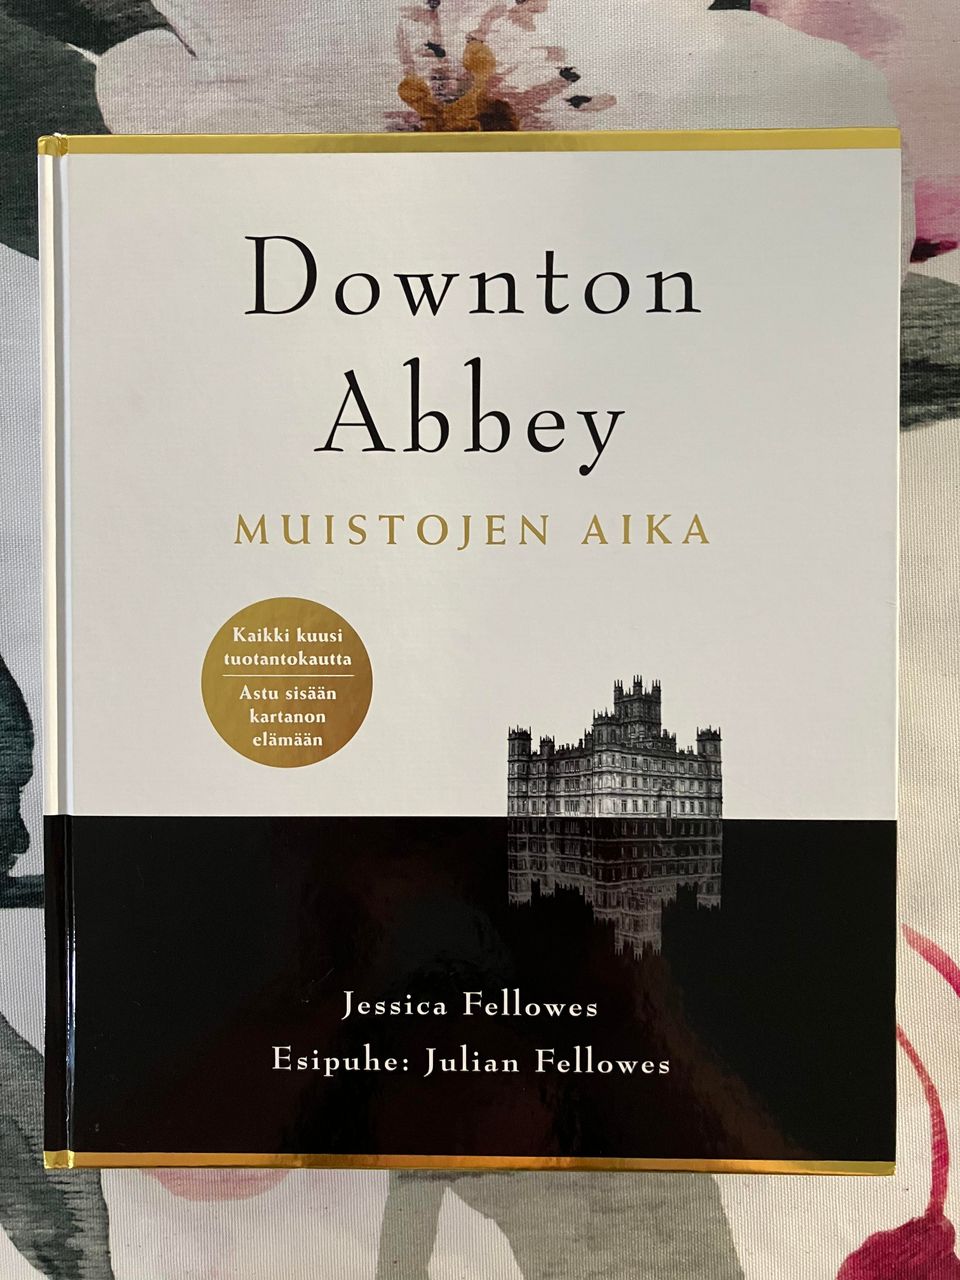 J. Fellowes : Downtown Abbey - Muistojen aika